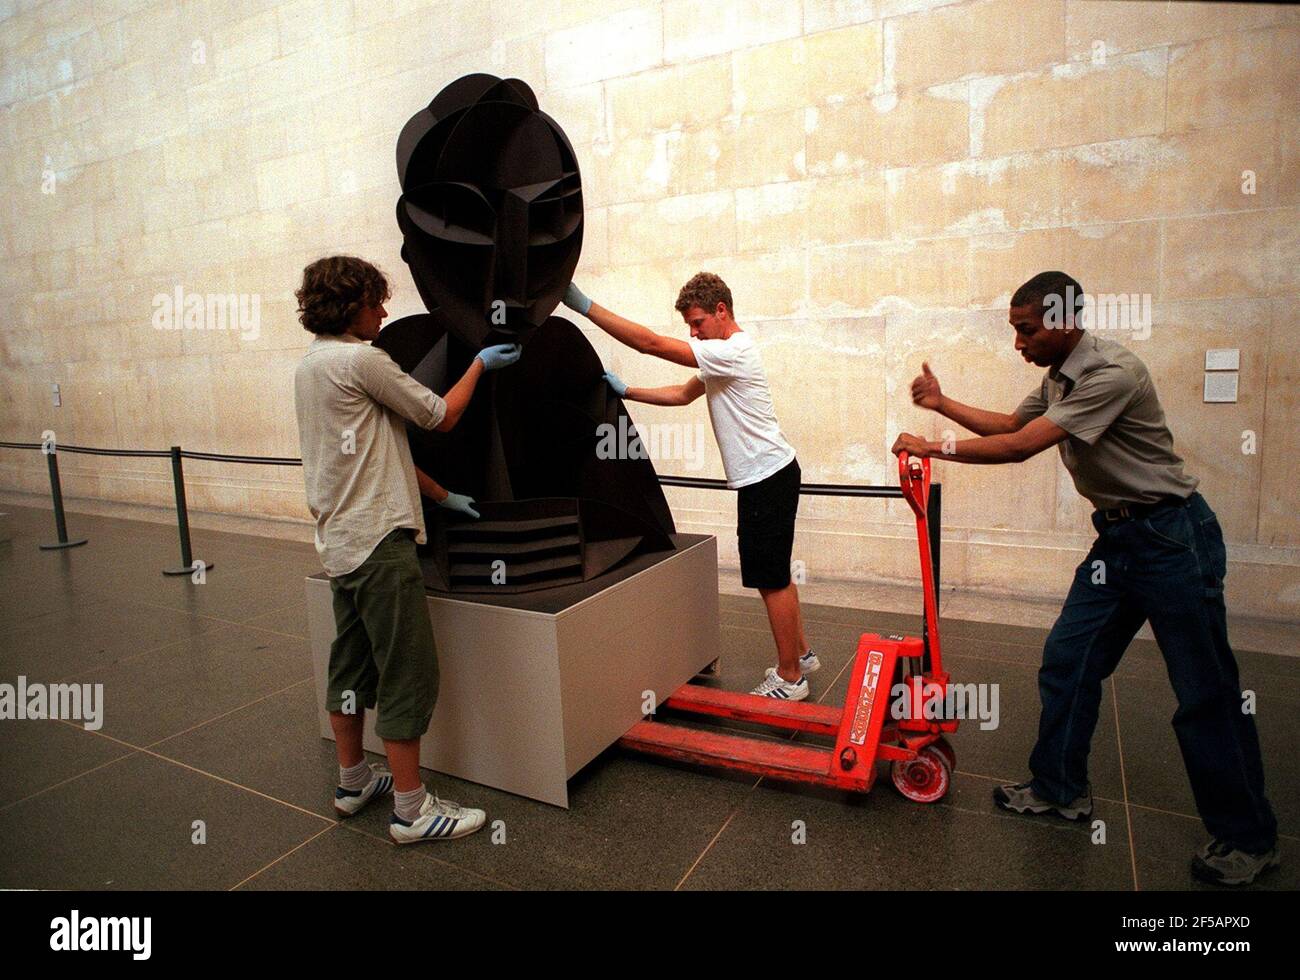 Preparazioni nella Tate per un'esposizione Agosto 1999 chiamata ferro e acciaio, sculture metalliche dal 1933 al 1989 presso la Tate Gallery. Mostra il lavoro di artisti americani ed europei che hanno scelto di esplorare le proprietà del ferro e dell'acciaio. L'immagine mostra un pezzo chiamato testa n. 2 di Naum Gabo. Foto Stock